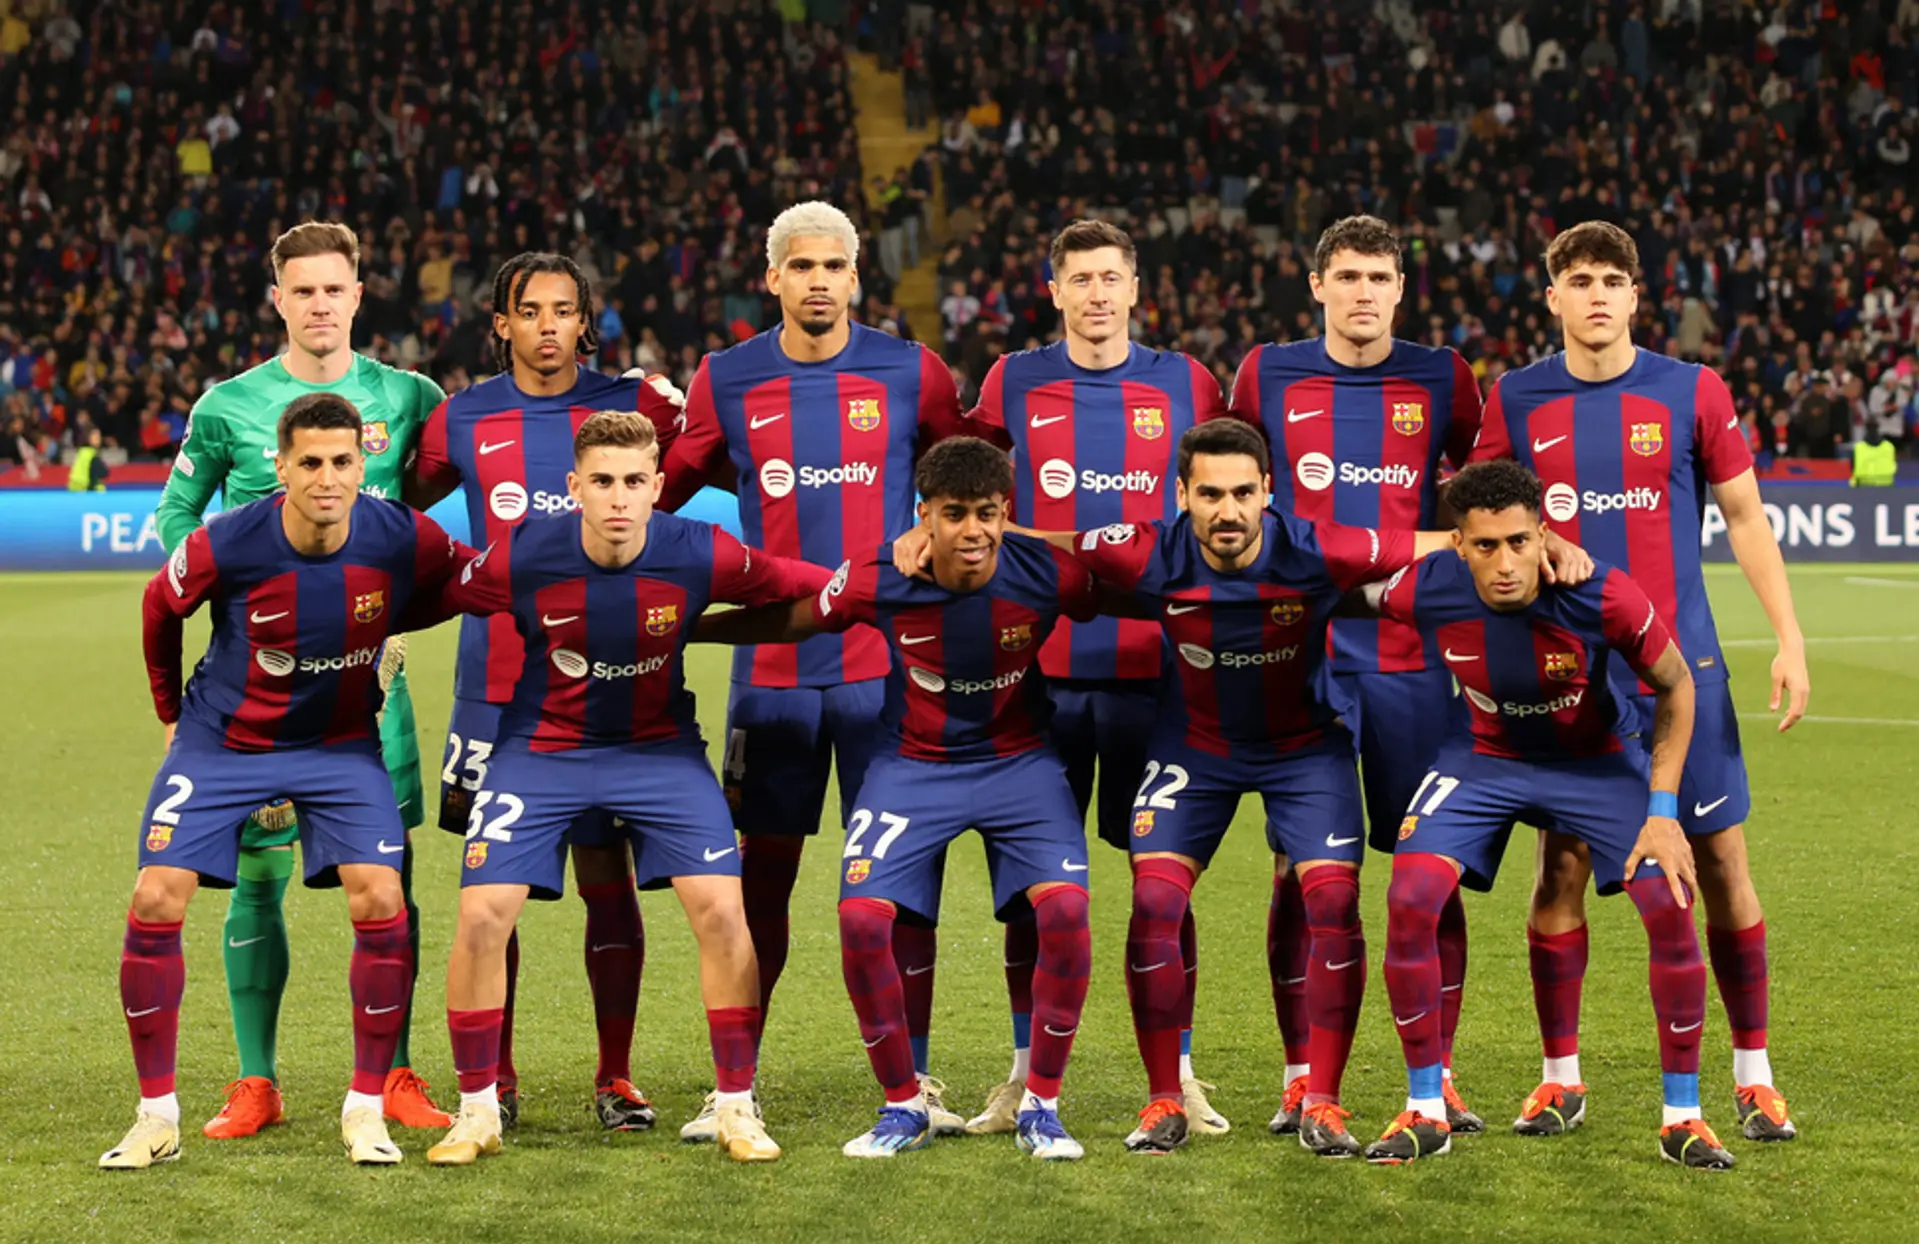 10+ joueurs qui pourraient rejoindre le Barça cet été : résumé des transferts avec probabilités